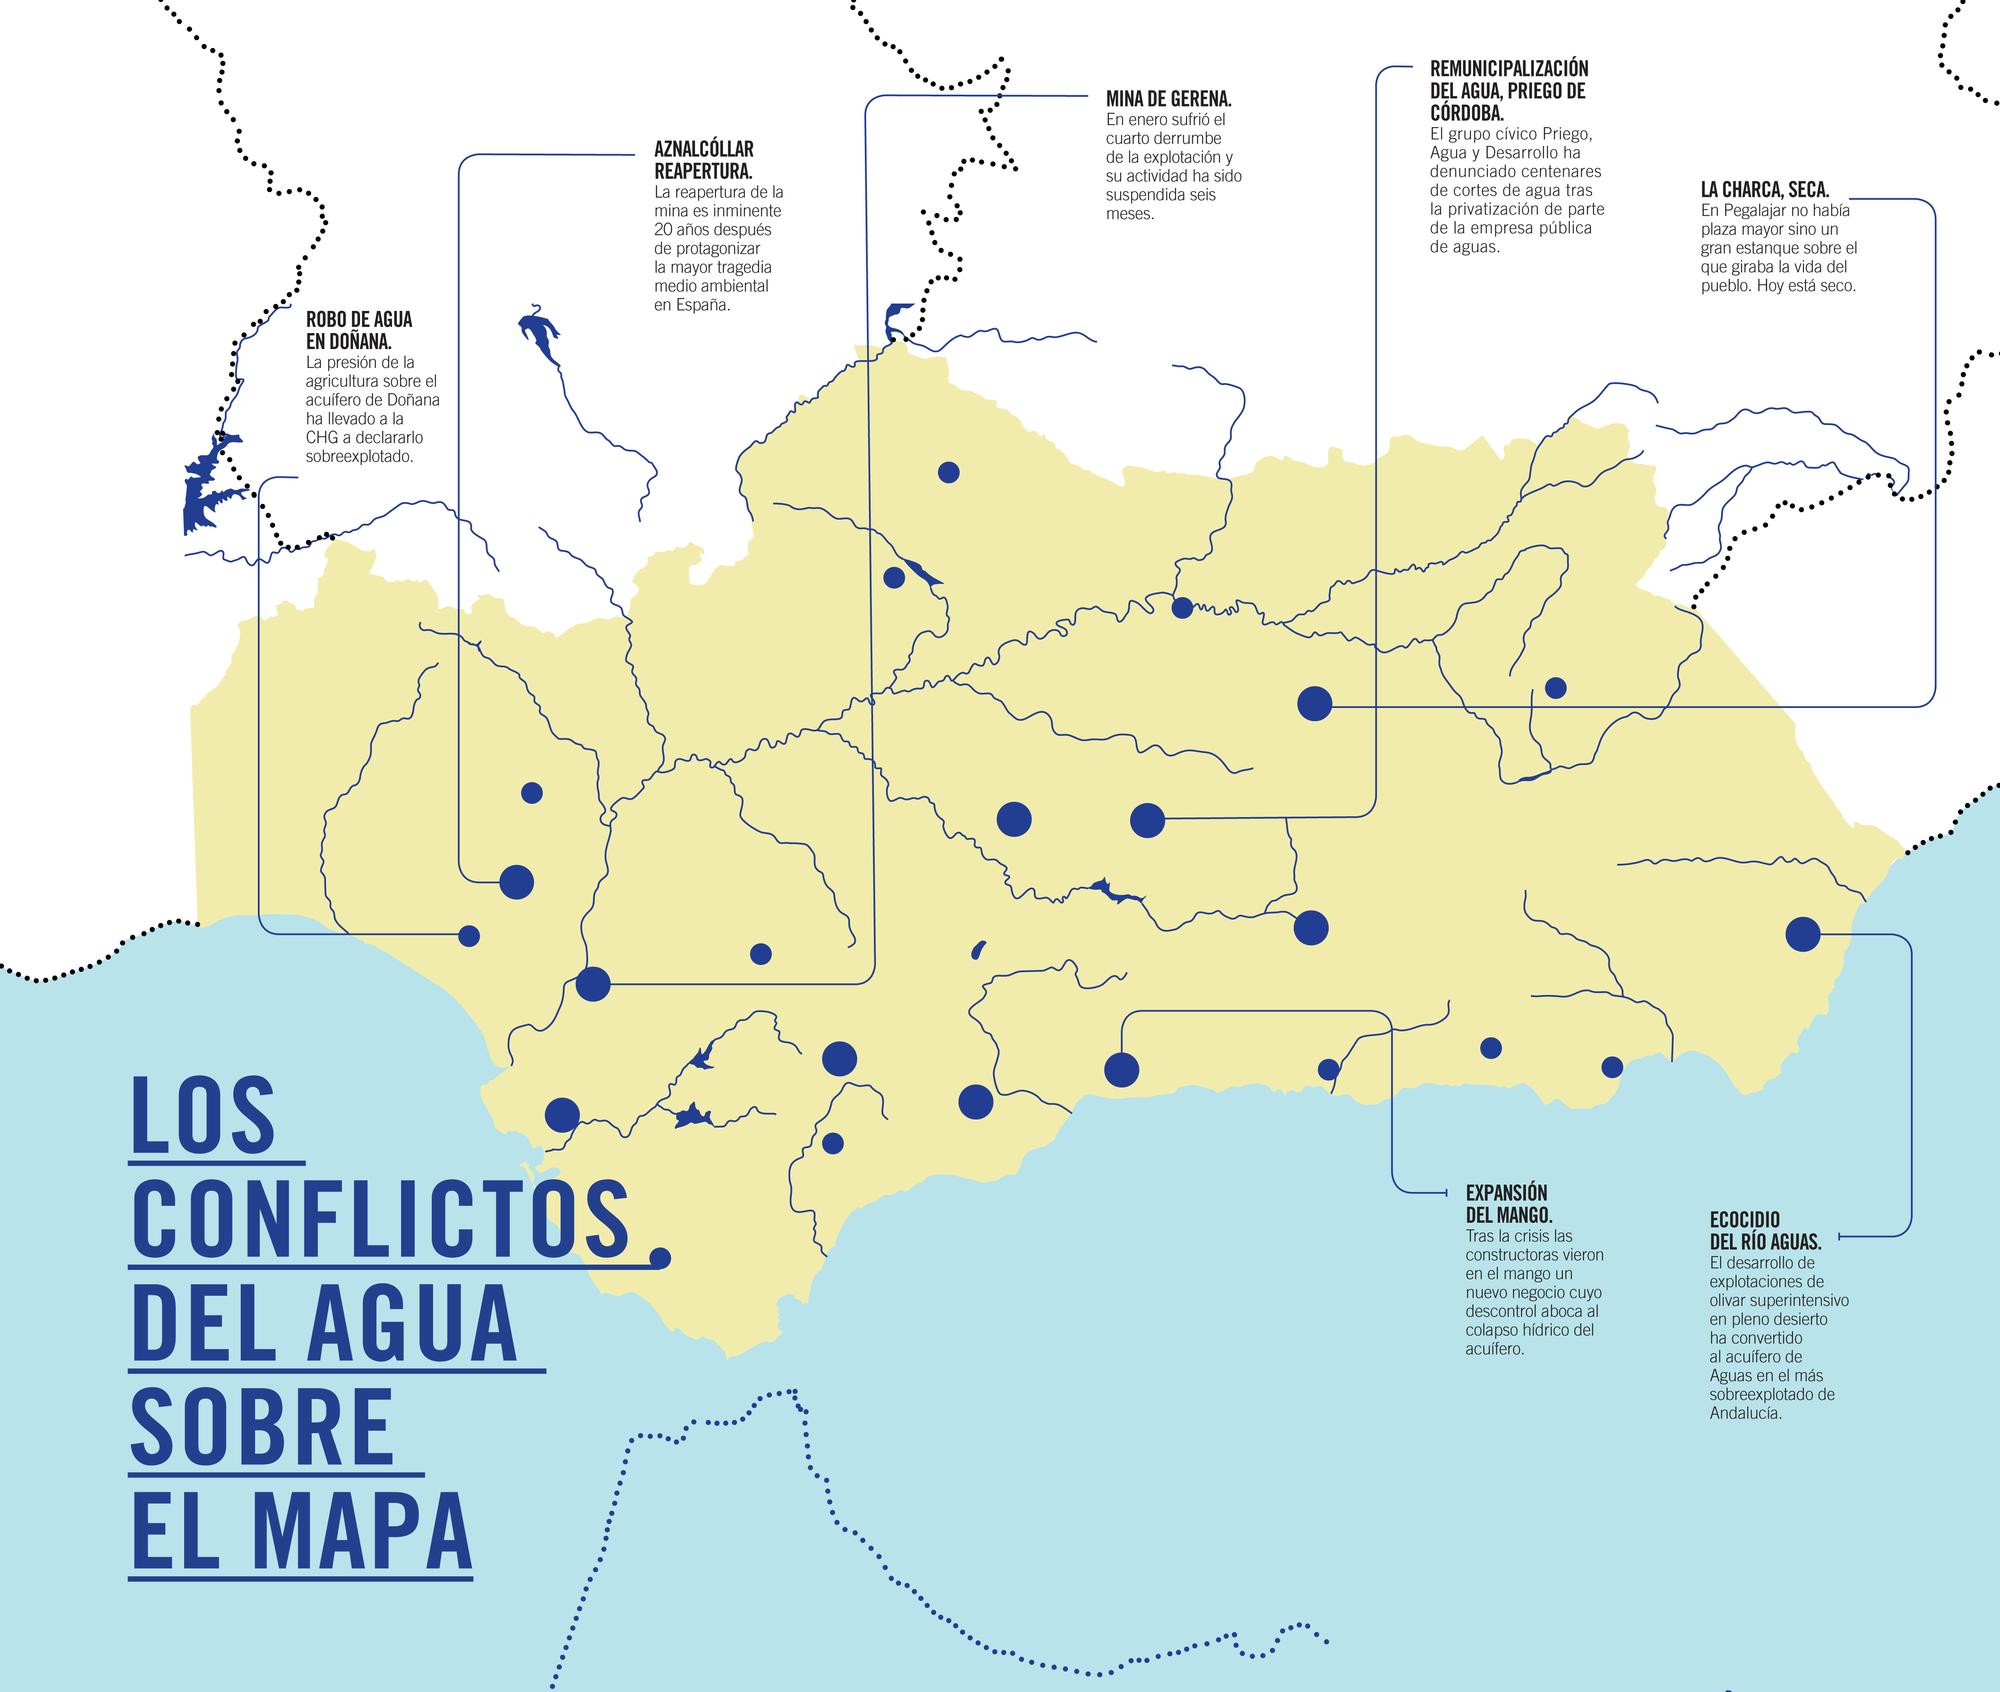 Los conflictos del agua en Andalucía